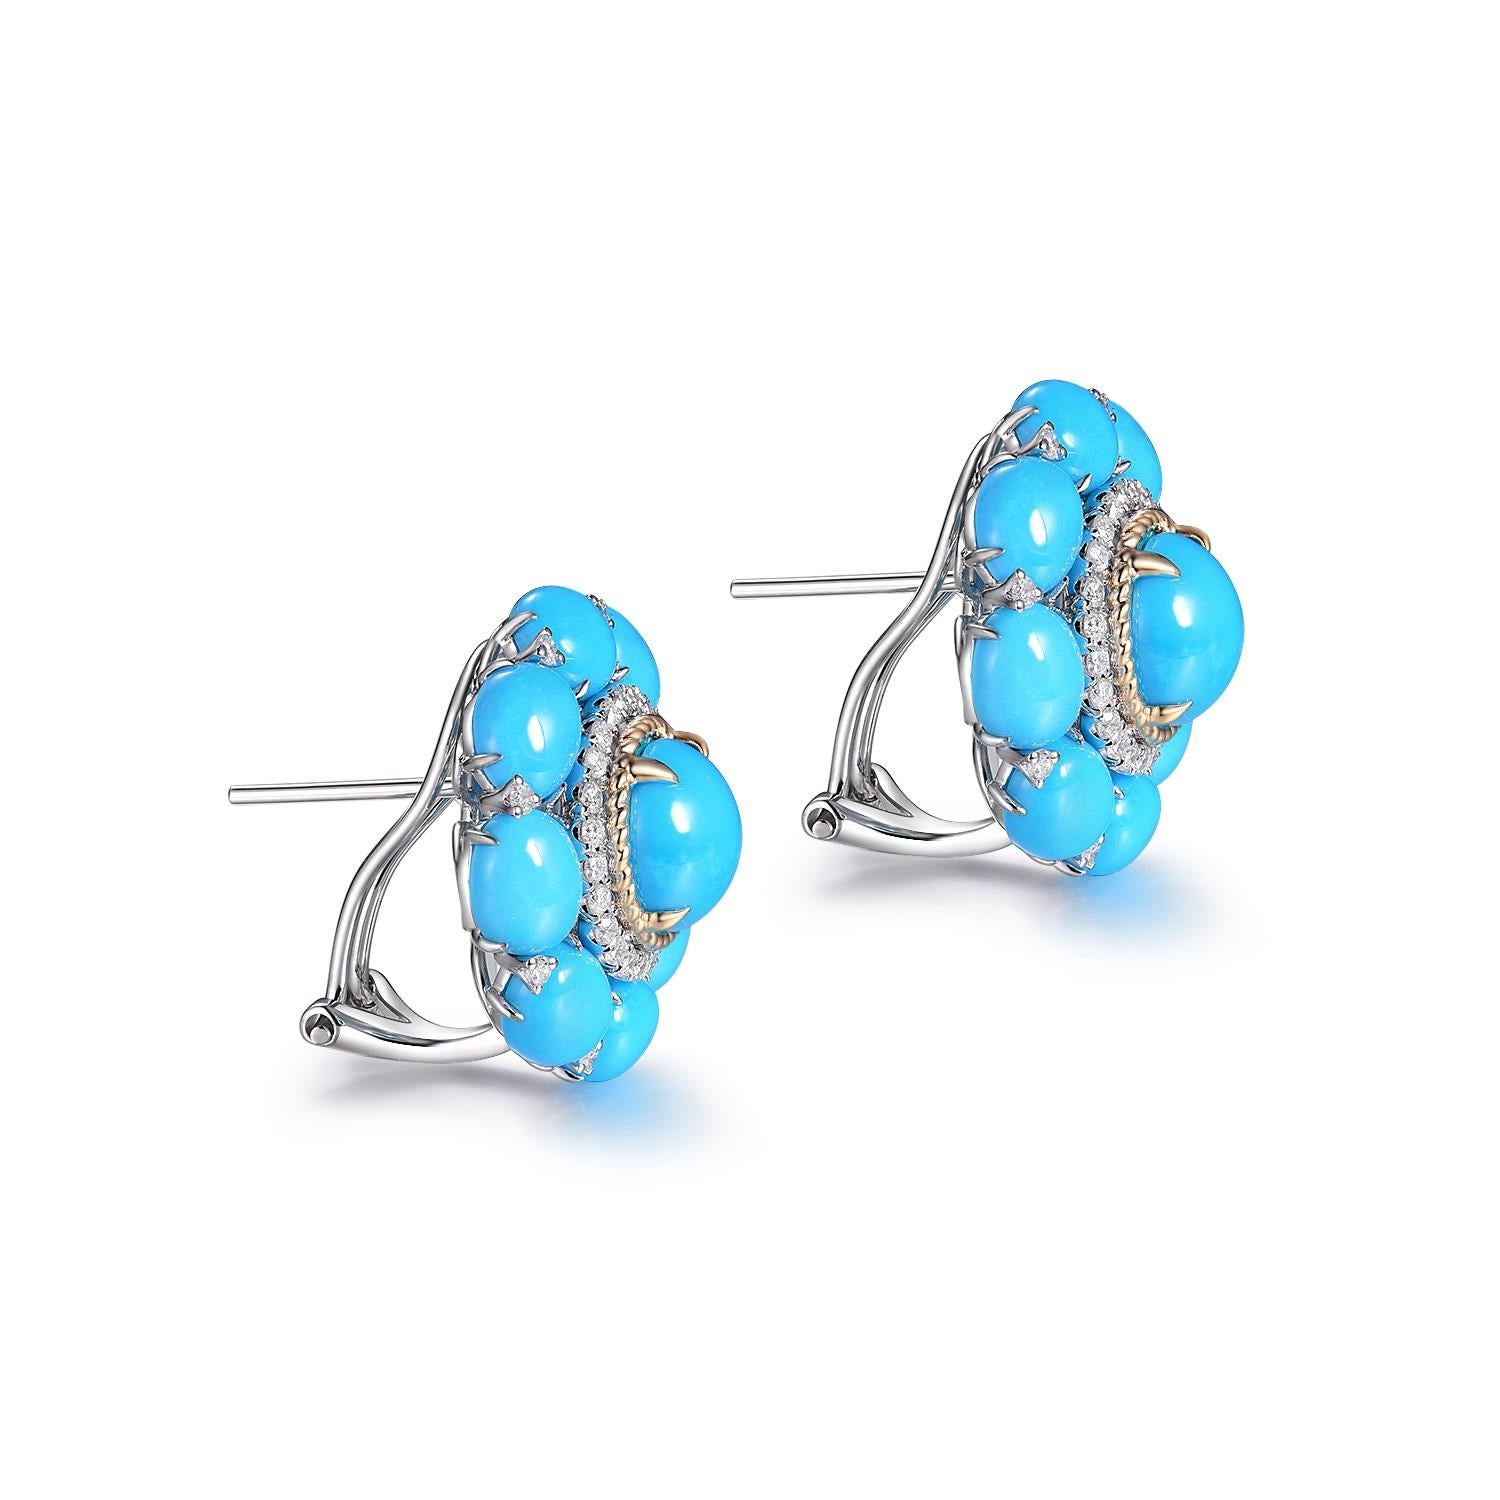 Die Türkis-Diamant-Ohrringe sind ein auffälliges Paar Ohrringe, das die leuchtenden Farben des Türkises und den funkelnden Glanz der Diamanten wunderbar zur Geltung bringt. Die aus 14 Karat Weiß- und Gelbgold gefertigten Ohrringe strahlen Eleganz